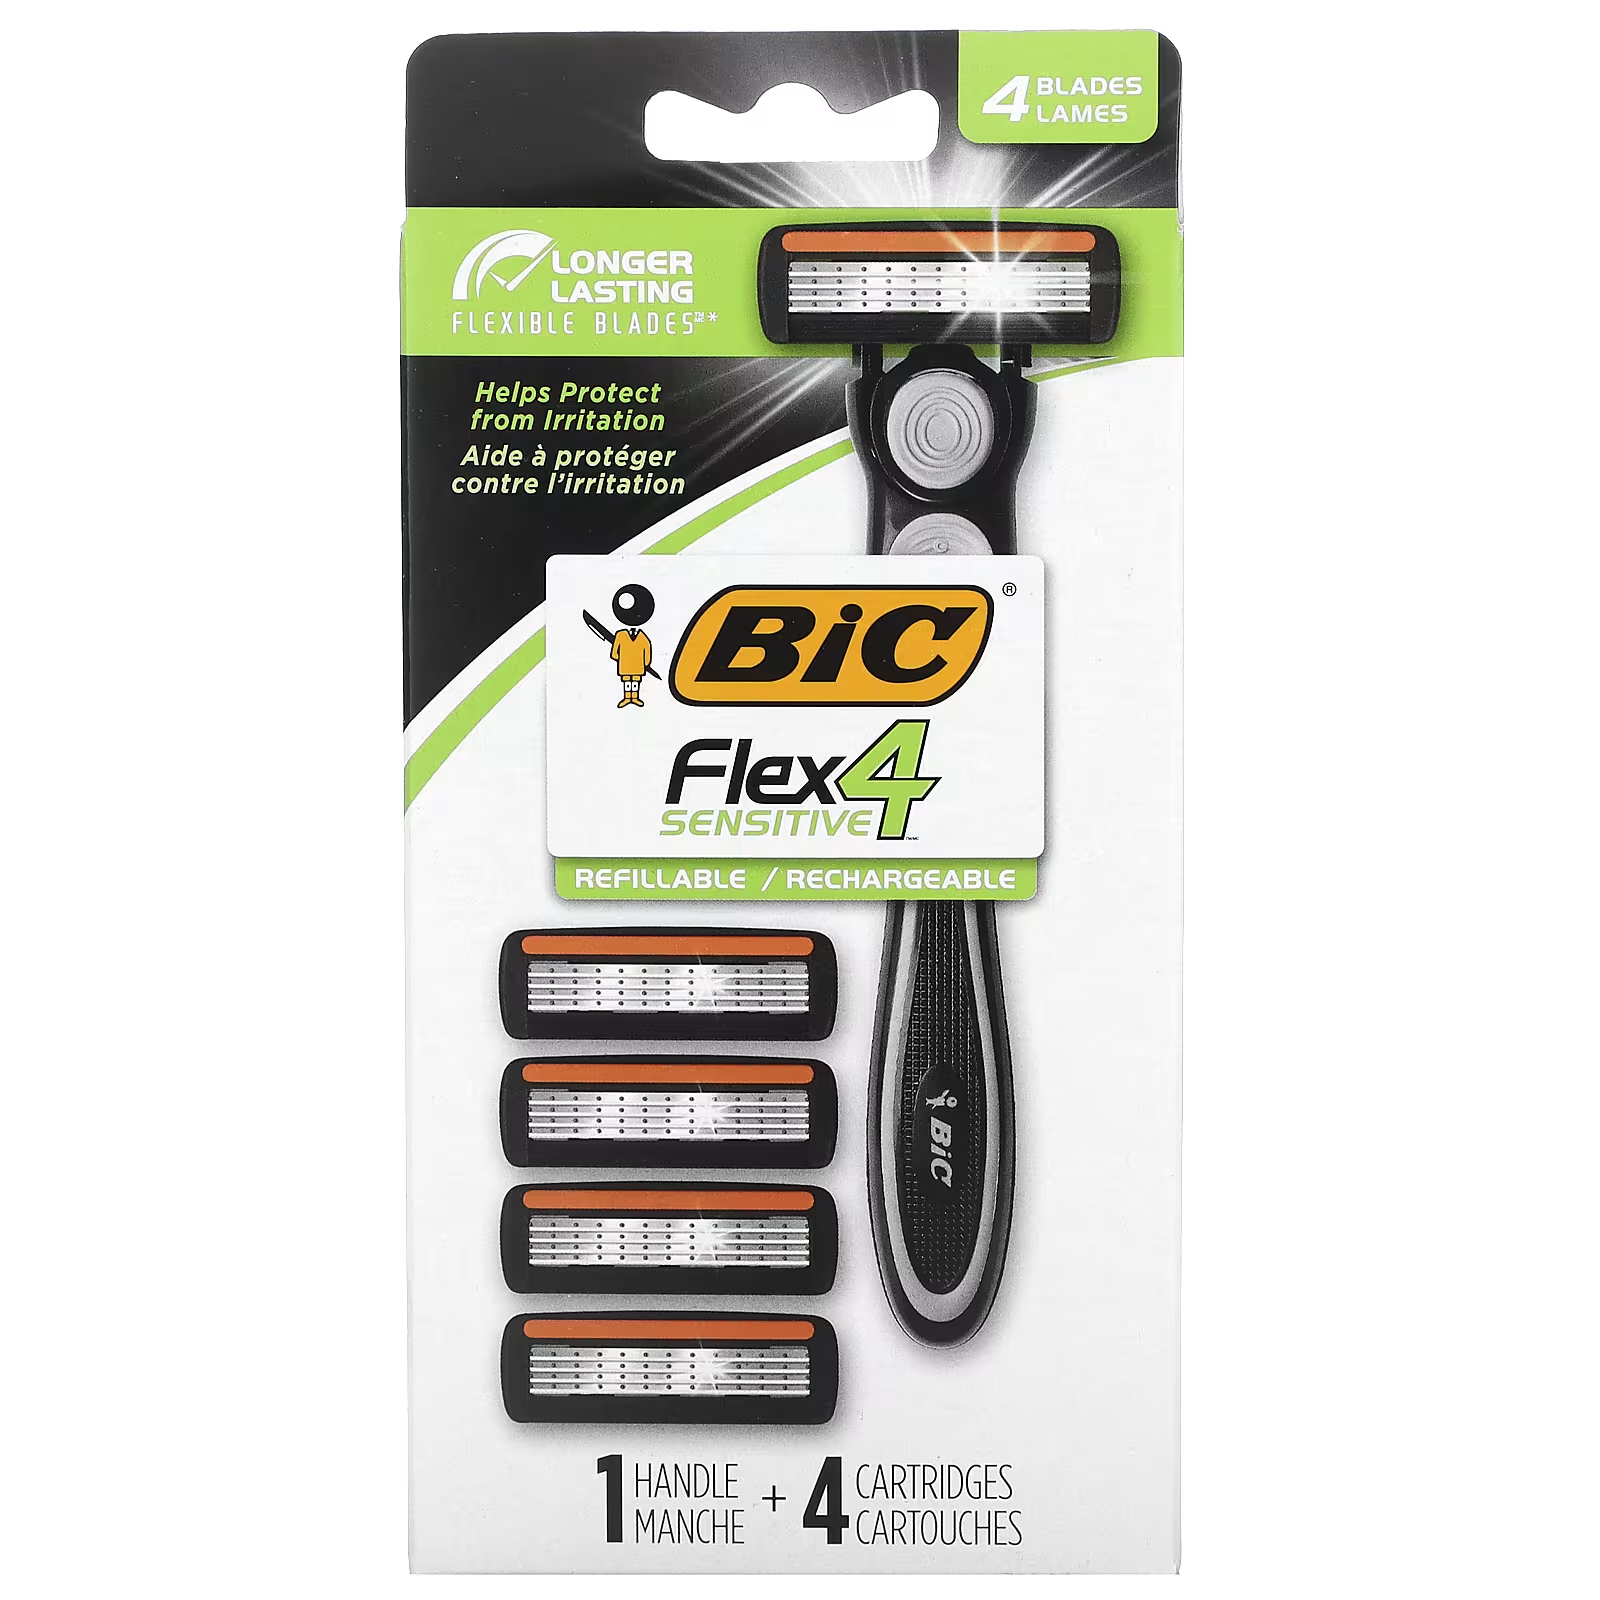 Станок для бритья Bic Flex 4 Sensitive, 4 картриджа